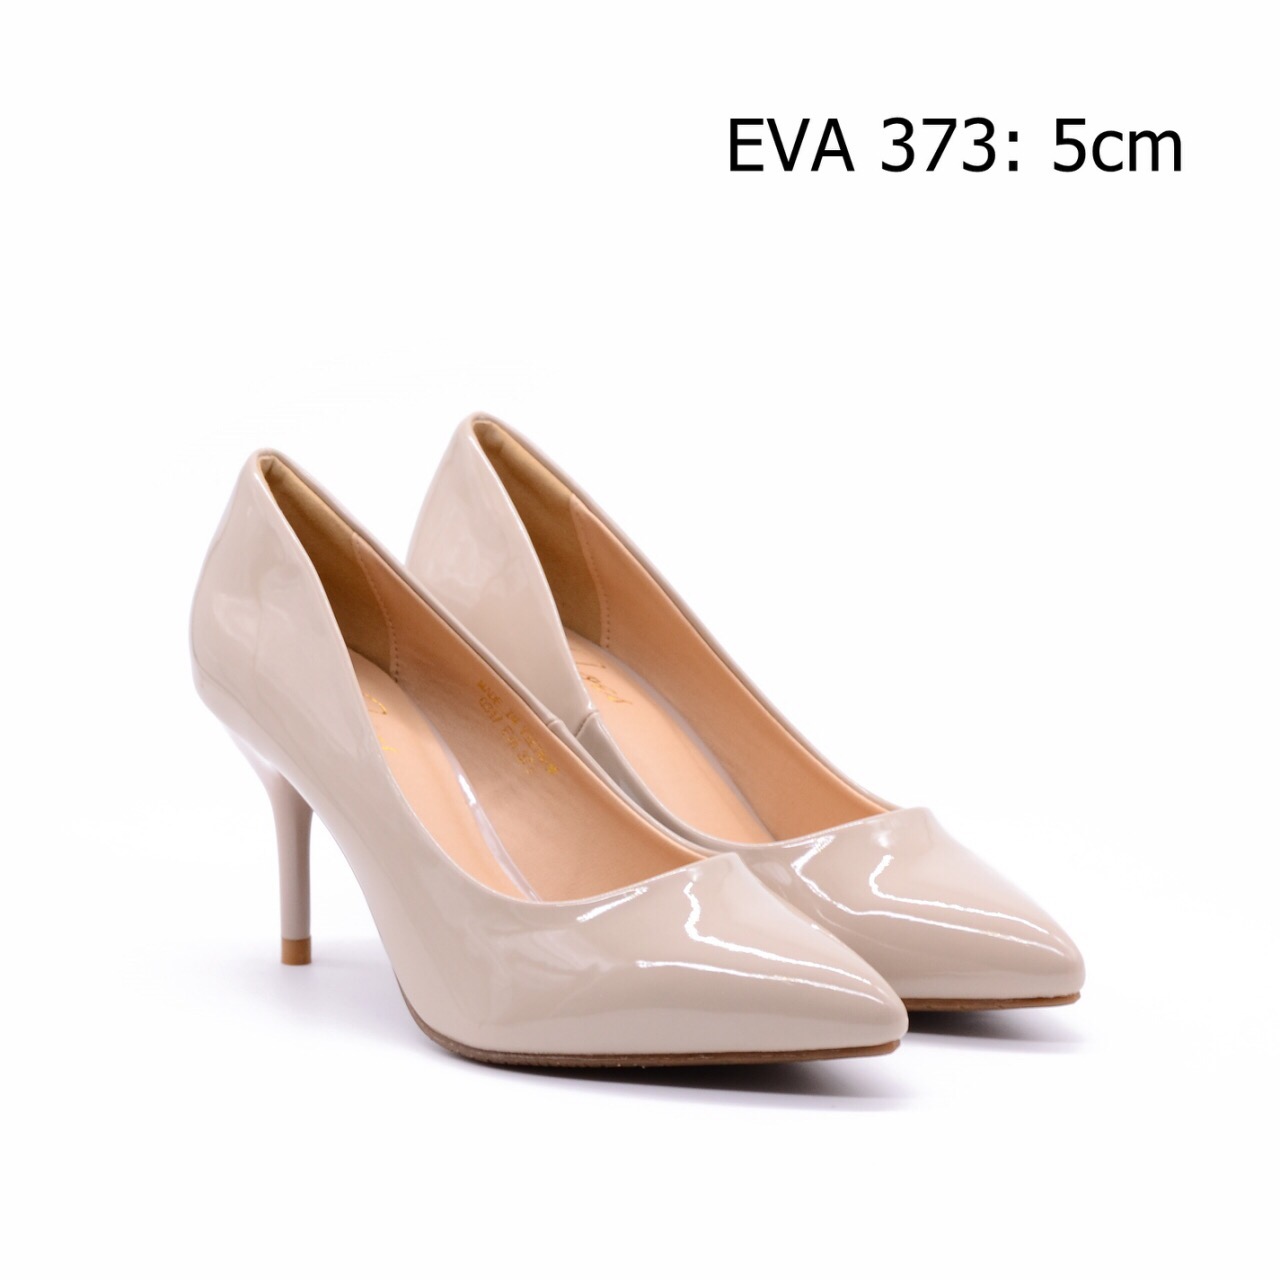 Giày cao gót da bóng EVA373 kiểu dáng sang trọng, thiết kế gót nhọn thanh thoát, tôn dáng.